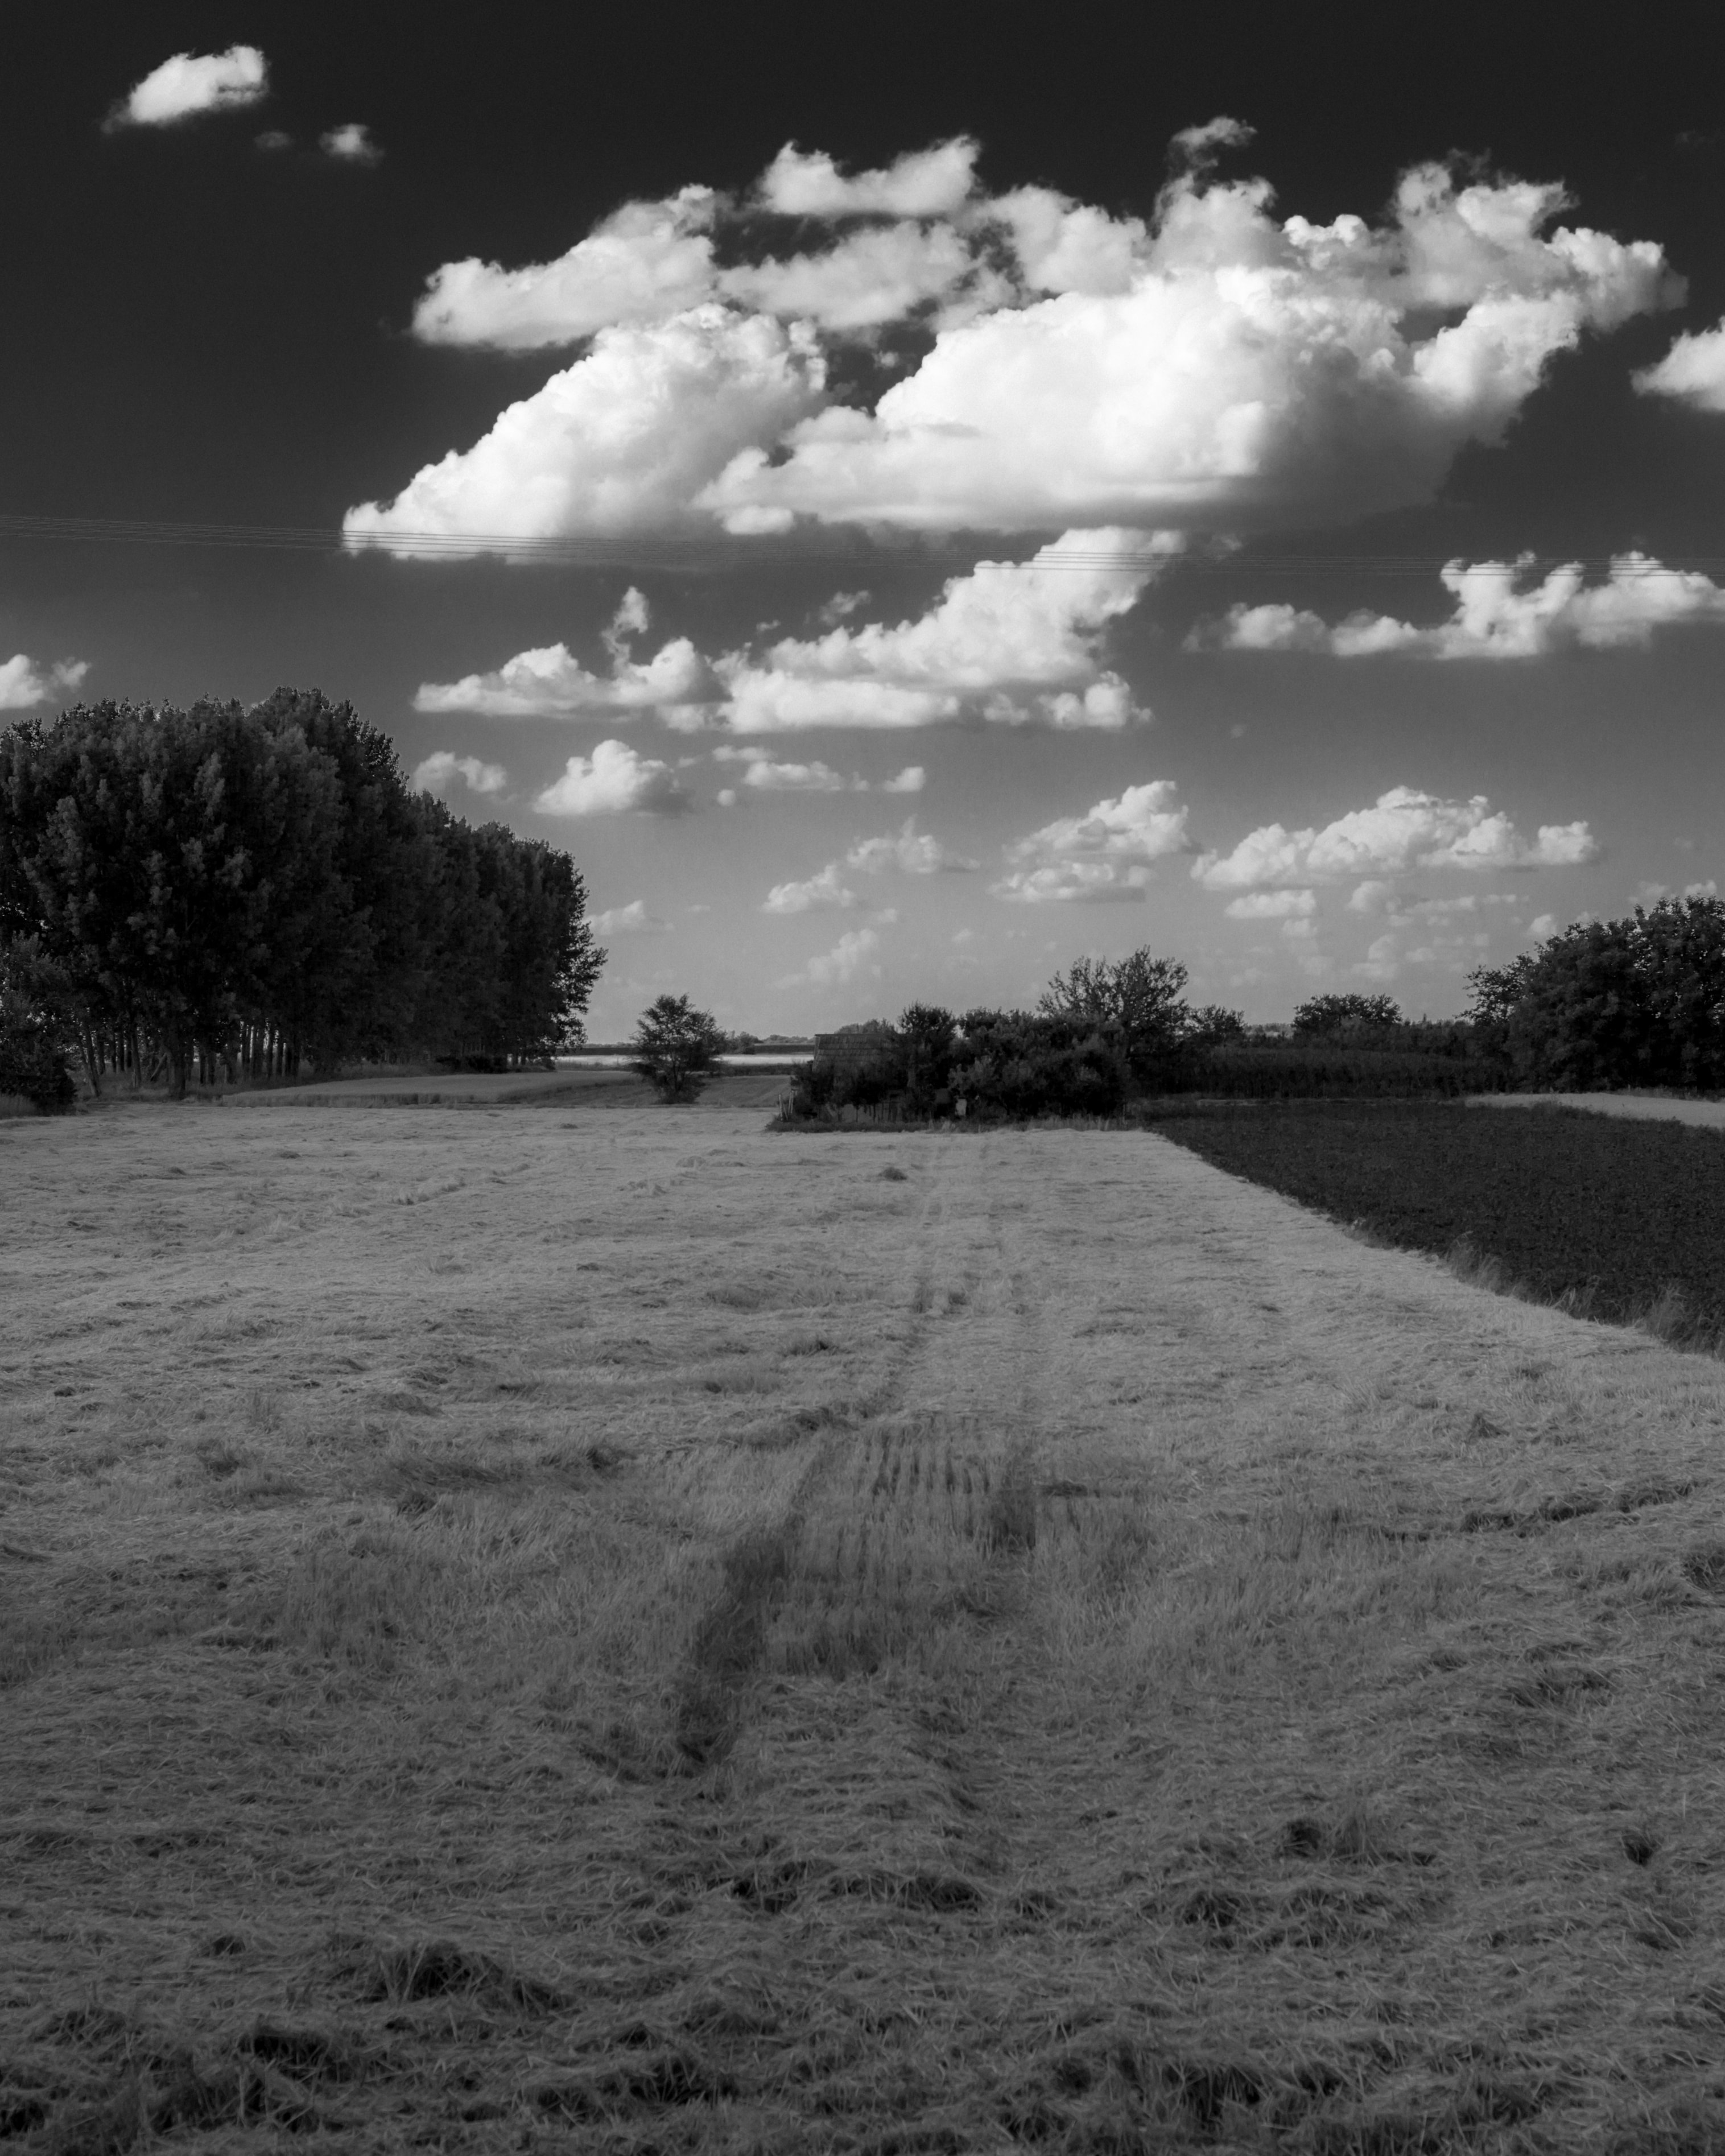 Hình ảnh miễn phí: lúa mì, màu đen và trắng, thu hoạch, đơn sắc, Wheatfield, cây, cảnh quan, mùa đông, thiên nhiên, Trang trại